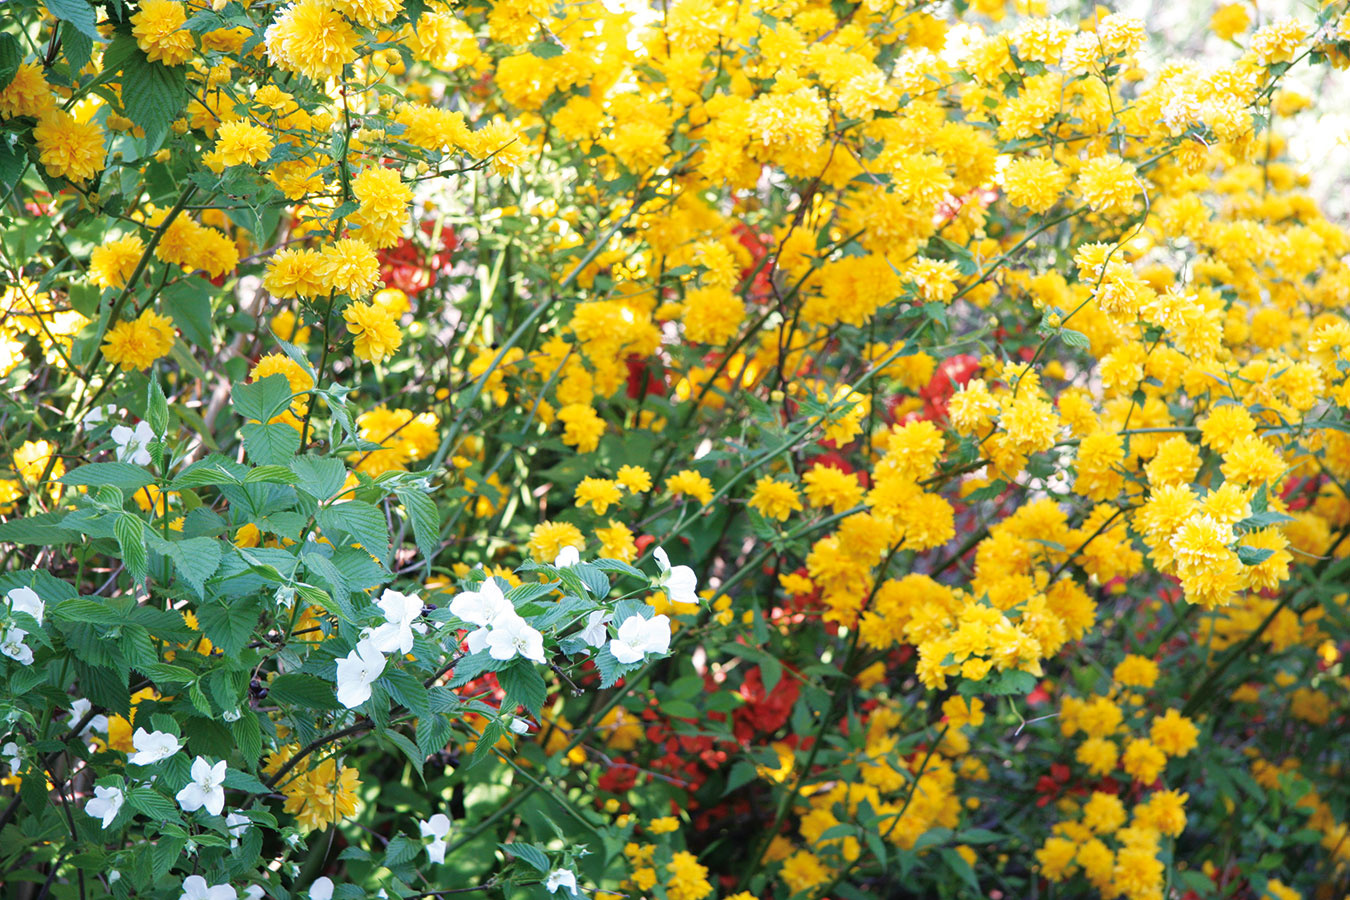 Už na jar môžu v záhrade zažiariť pekne kvitnúce kry, ktoré sa vyznačujú aj sýtymi farbami a neraz i intenzívnou vôňou. Milovníci vôní by určite nemali zabudnúť na pajazmín (Philadelphus coronarius) a najmä orgován (Syringa vulgaris) – v ponuke nájdete čoraz širšiu ponuku farieb kvetov. Typickým poslom jari je zlatovka (Forsythia intermedia), ktorá dorastá do výšky a šírky až 3 m, v ponuke sú ale aj kompaktnejšie kultivary, napríklad ’Week-End‘. K pekným drevinám patria aj okrasné ríbezle (Ribes sanguineum), trojpuk (Deutzia scabra), kalina (Viburnum opulus ’Roseum‘), kéria (Kerria japonica) alebo dulovec (Chaenomeles japonica), ktorý je vhodný do moderných mestských záhrad a záhrad v ázijskom štýle. K pestovateľsky nenáročným krom patrí aj tavoľník japonský, okrasná mandľa alebo tradičná vajgélia. 